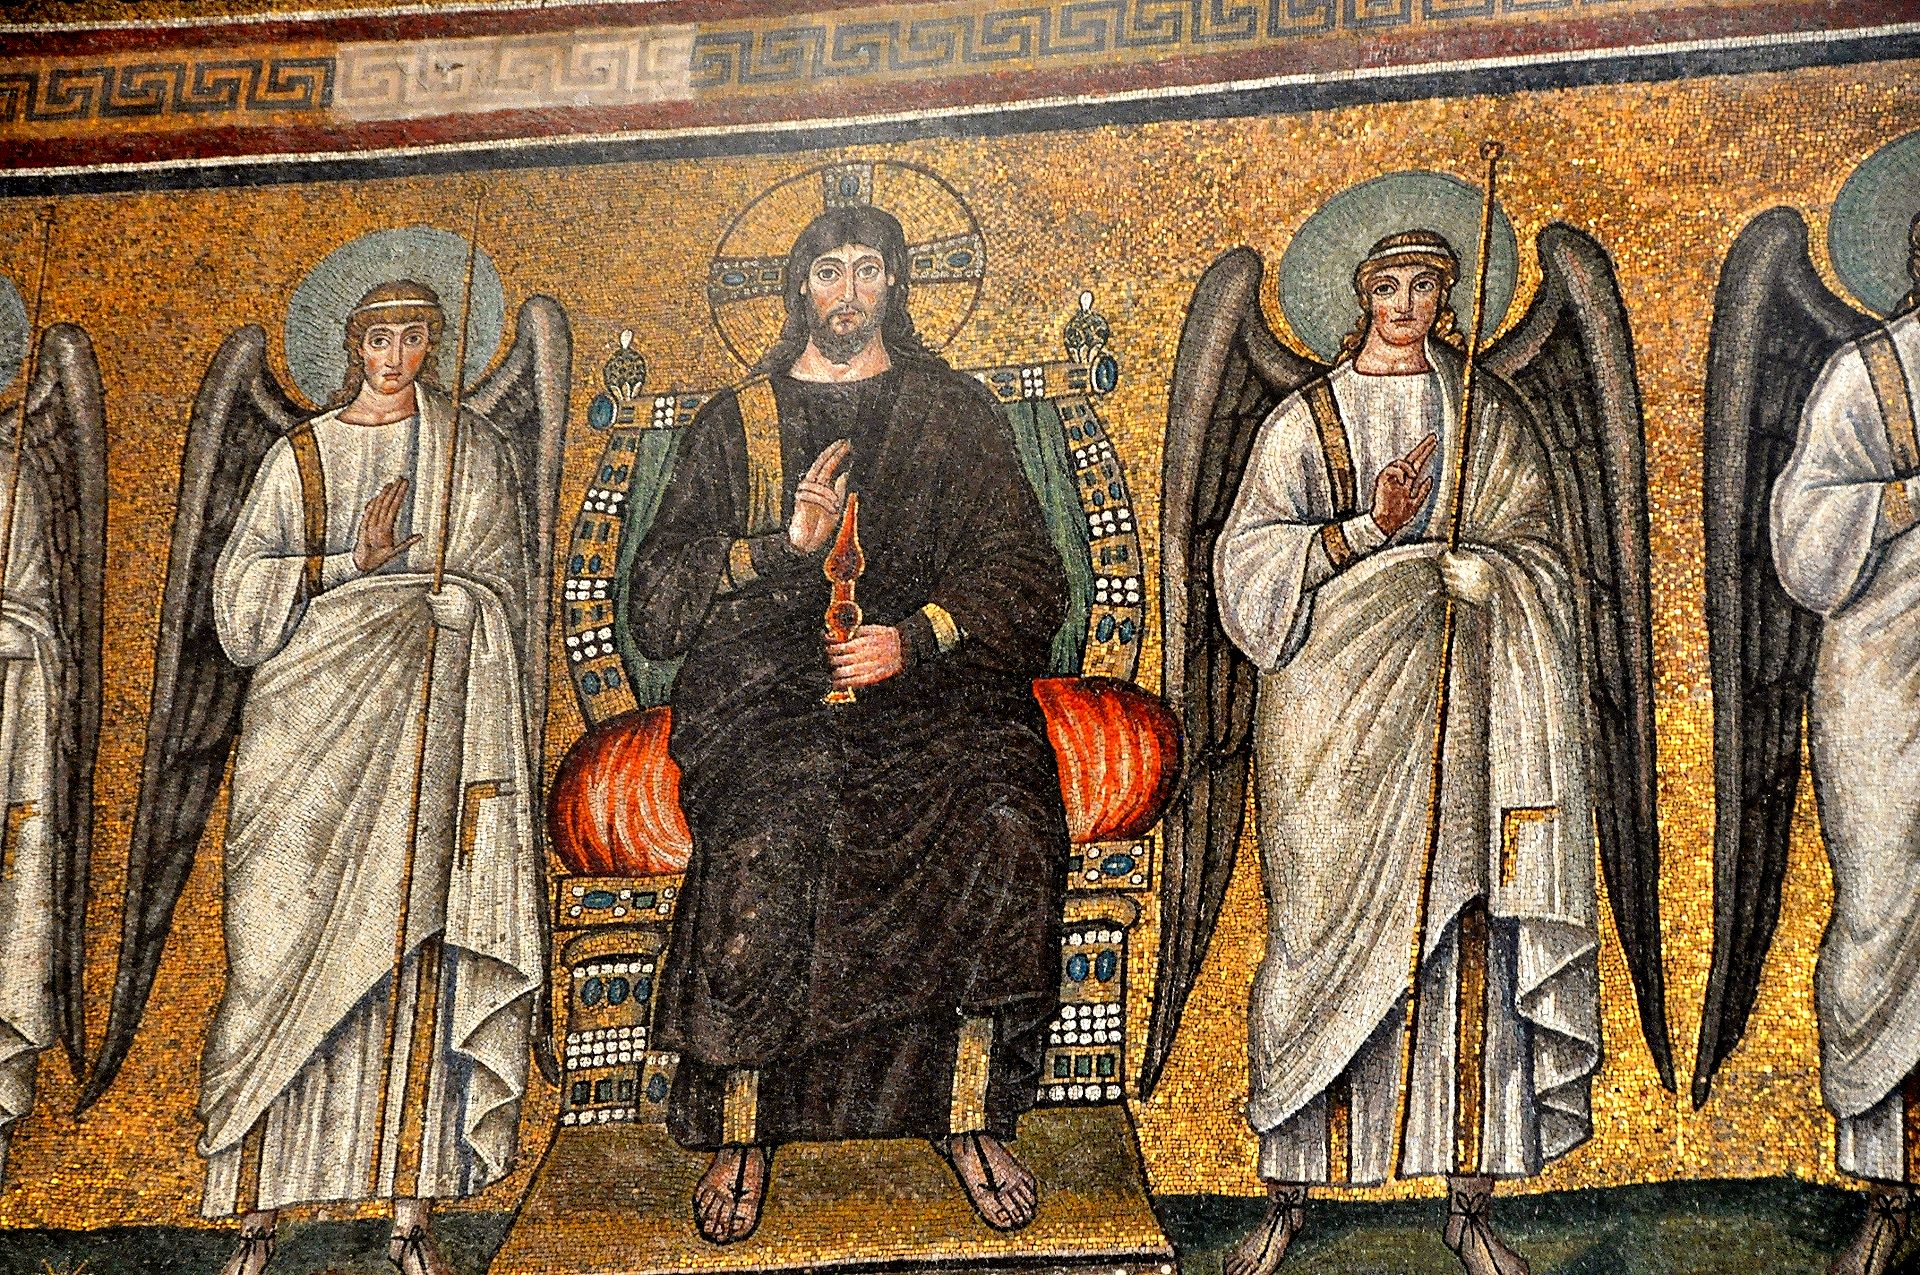 Basilica di Sant’Apollinare Nuovo - thronder Christus, eines der ältesten Teile der großen Mosaike (frühes 6. Jhdt.)